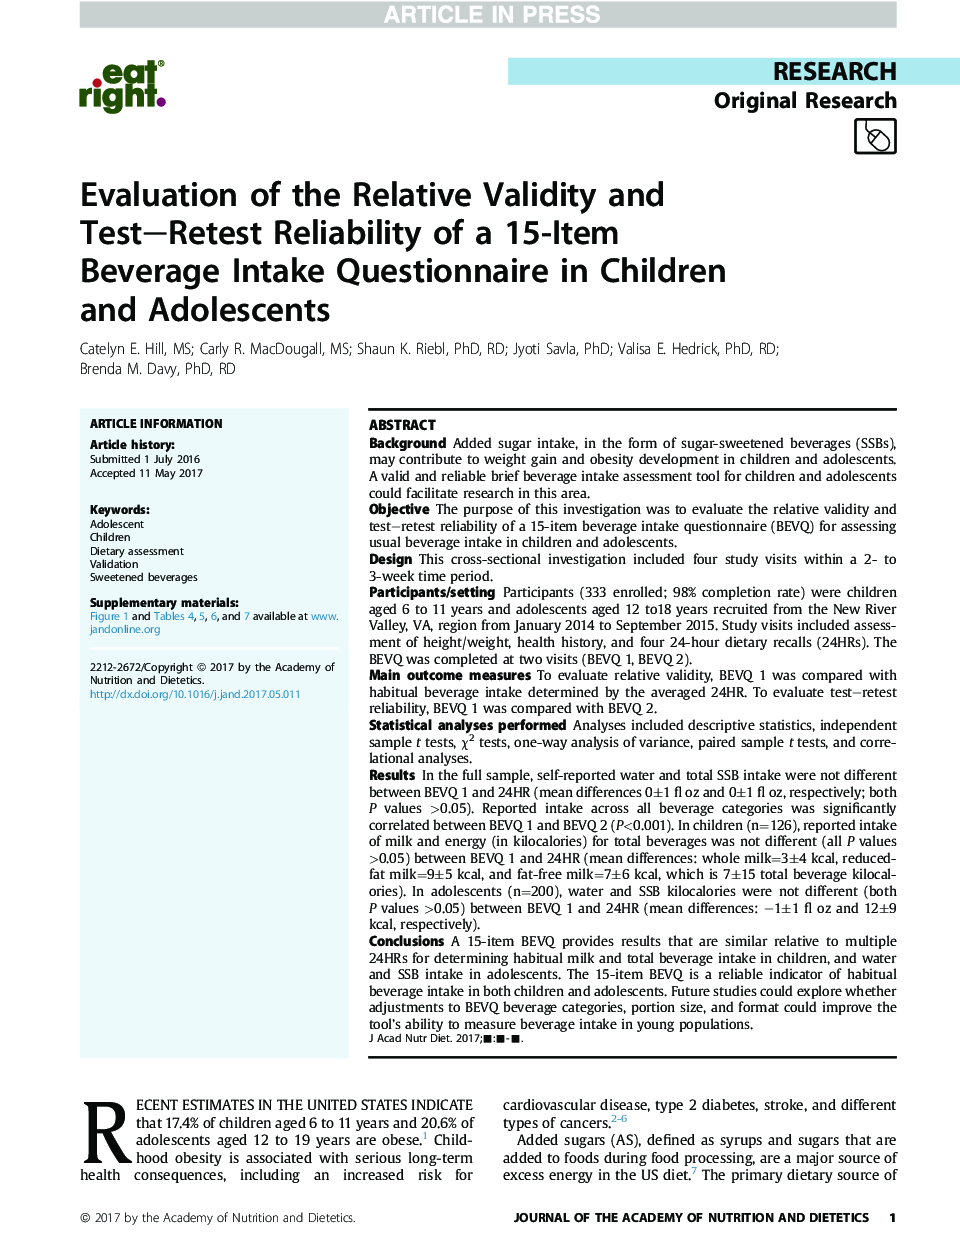 ارزیابی اعتبار نسبی و اعتبار مجدد آزمون تکاملی پرسشنامه مصرف نوشیدنی 15 عدد در کودکان و نوجوانان 